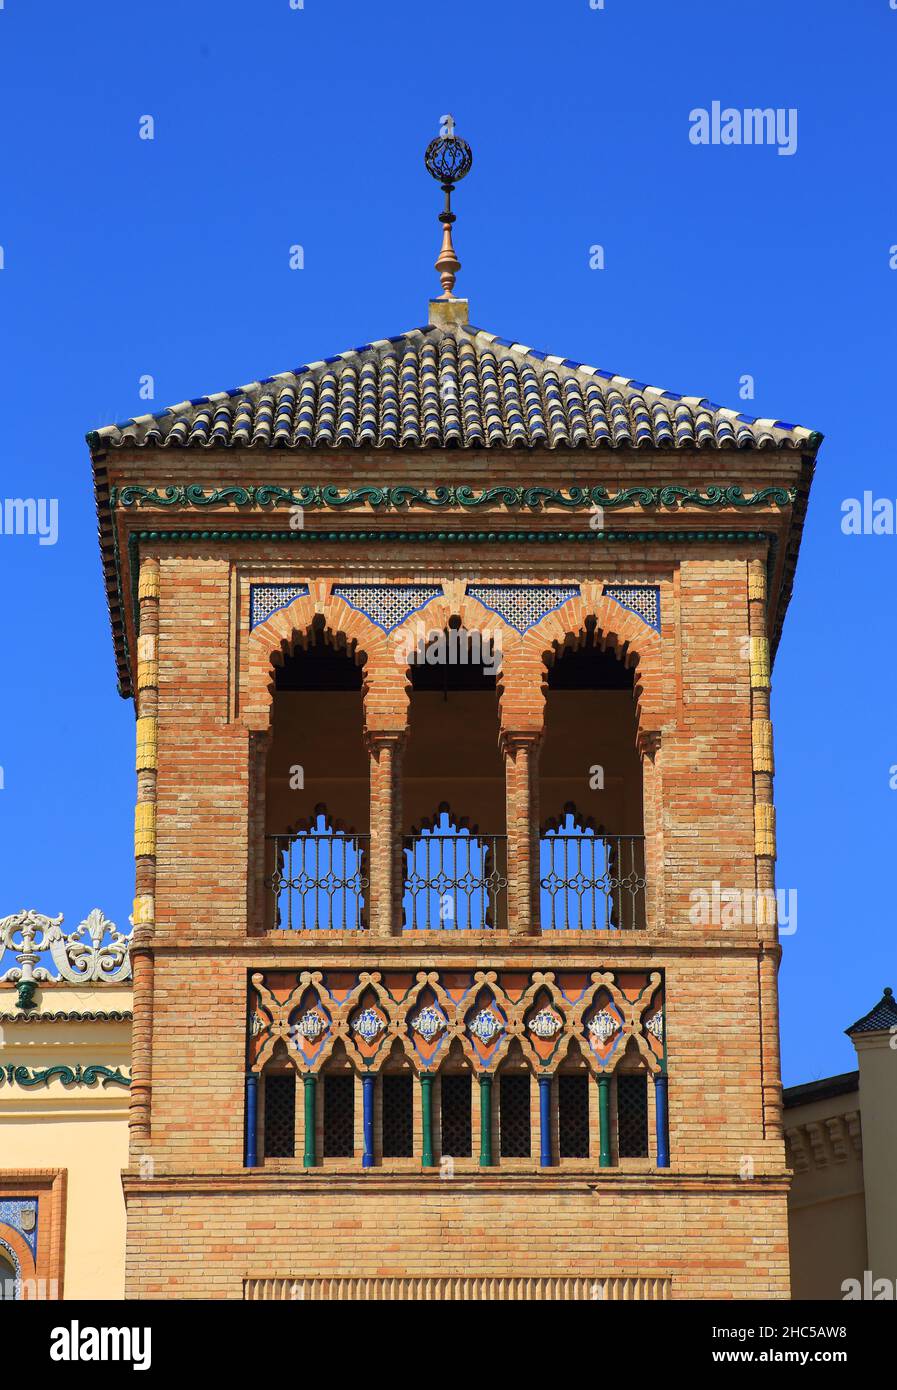 L'esterno ornato della storica Plaza de Espana - Piazza Spagnola, con piastrelle in ceramica e dettagli in stile moresco. Siviglia, Andalusia, Spagna. Foto Stock